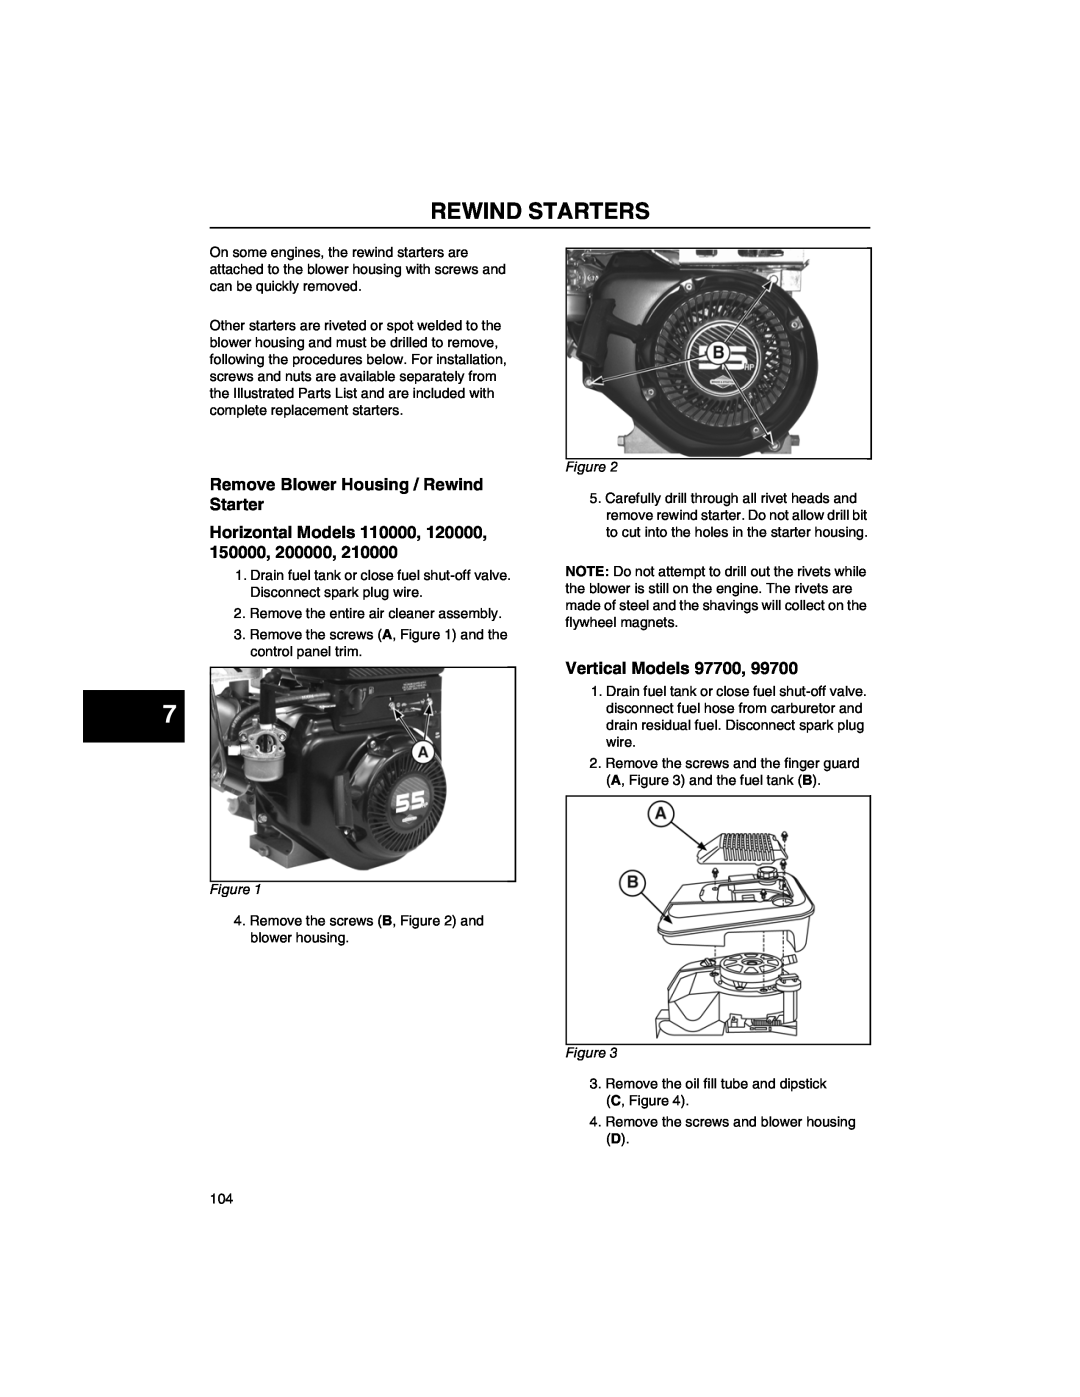 Briggs & Stratton CE8069, 271172, 270962 Rewind Starters, Remove Blower Housing / Rewind Starter, Vertical Models 97700 